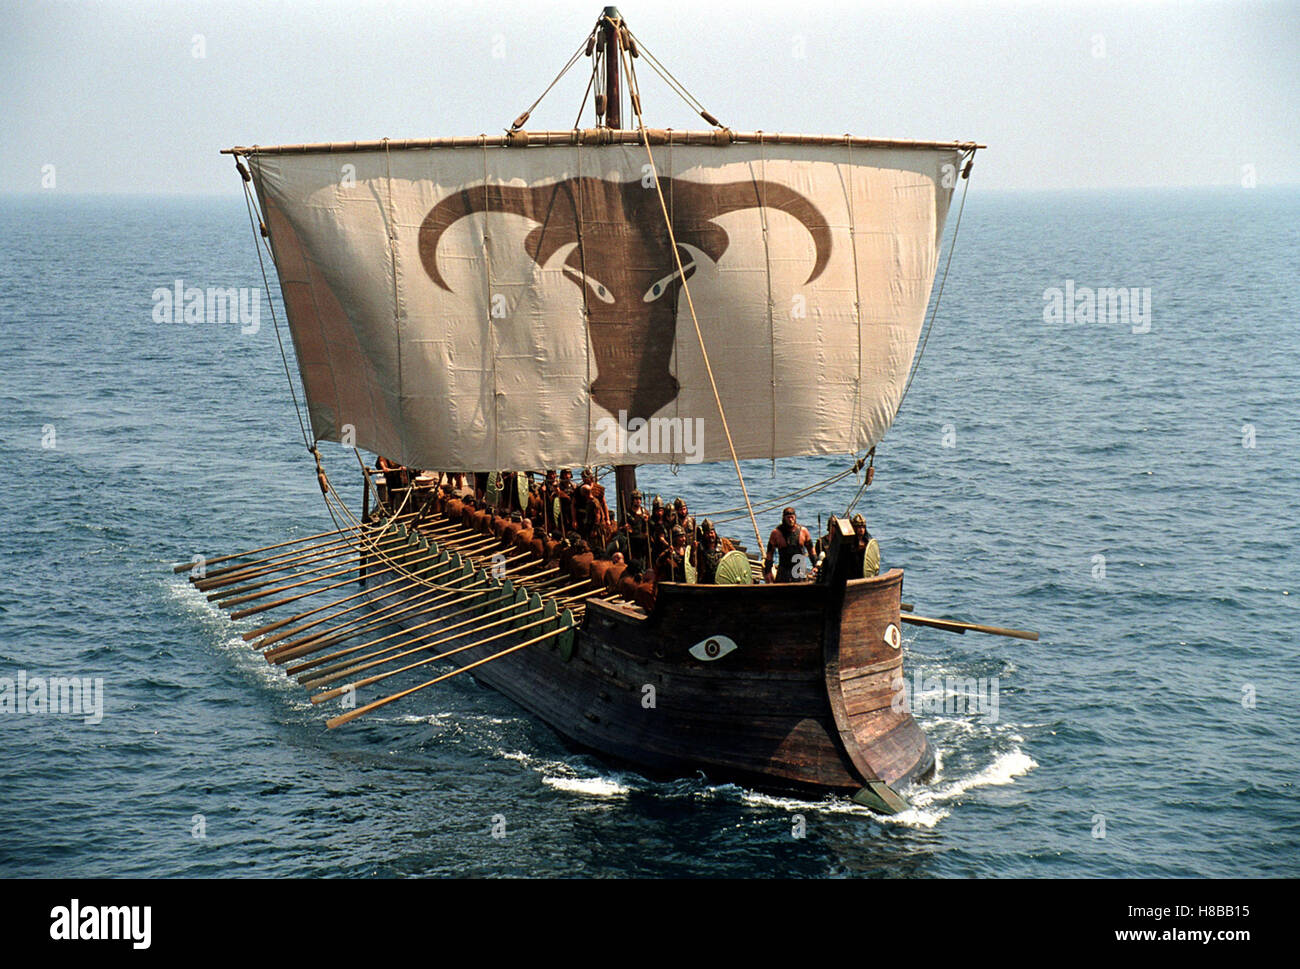 Troja, (TROY) USA 2004, Regie: Wolfgang Petersen, Key: Schiff, Segelschiff, Galeere, Segel, Wasser, Meer, Ozean, Stock Photo